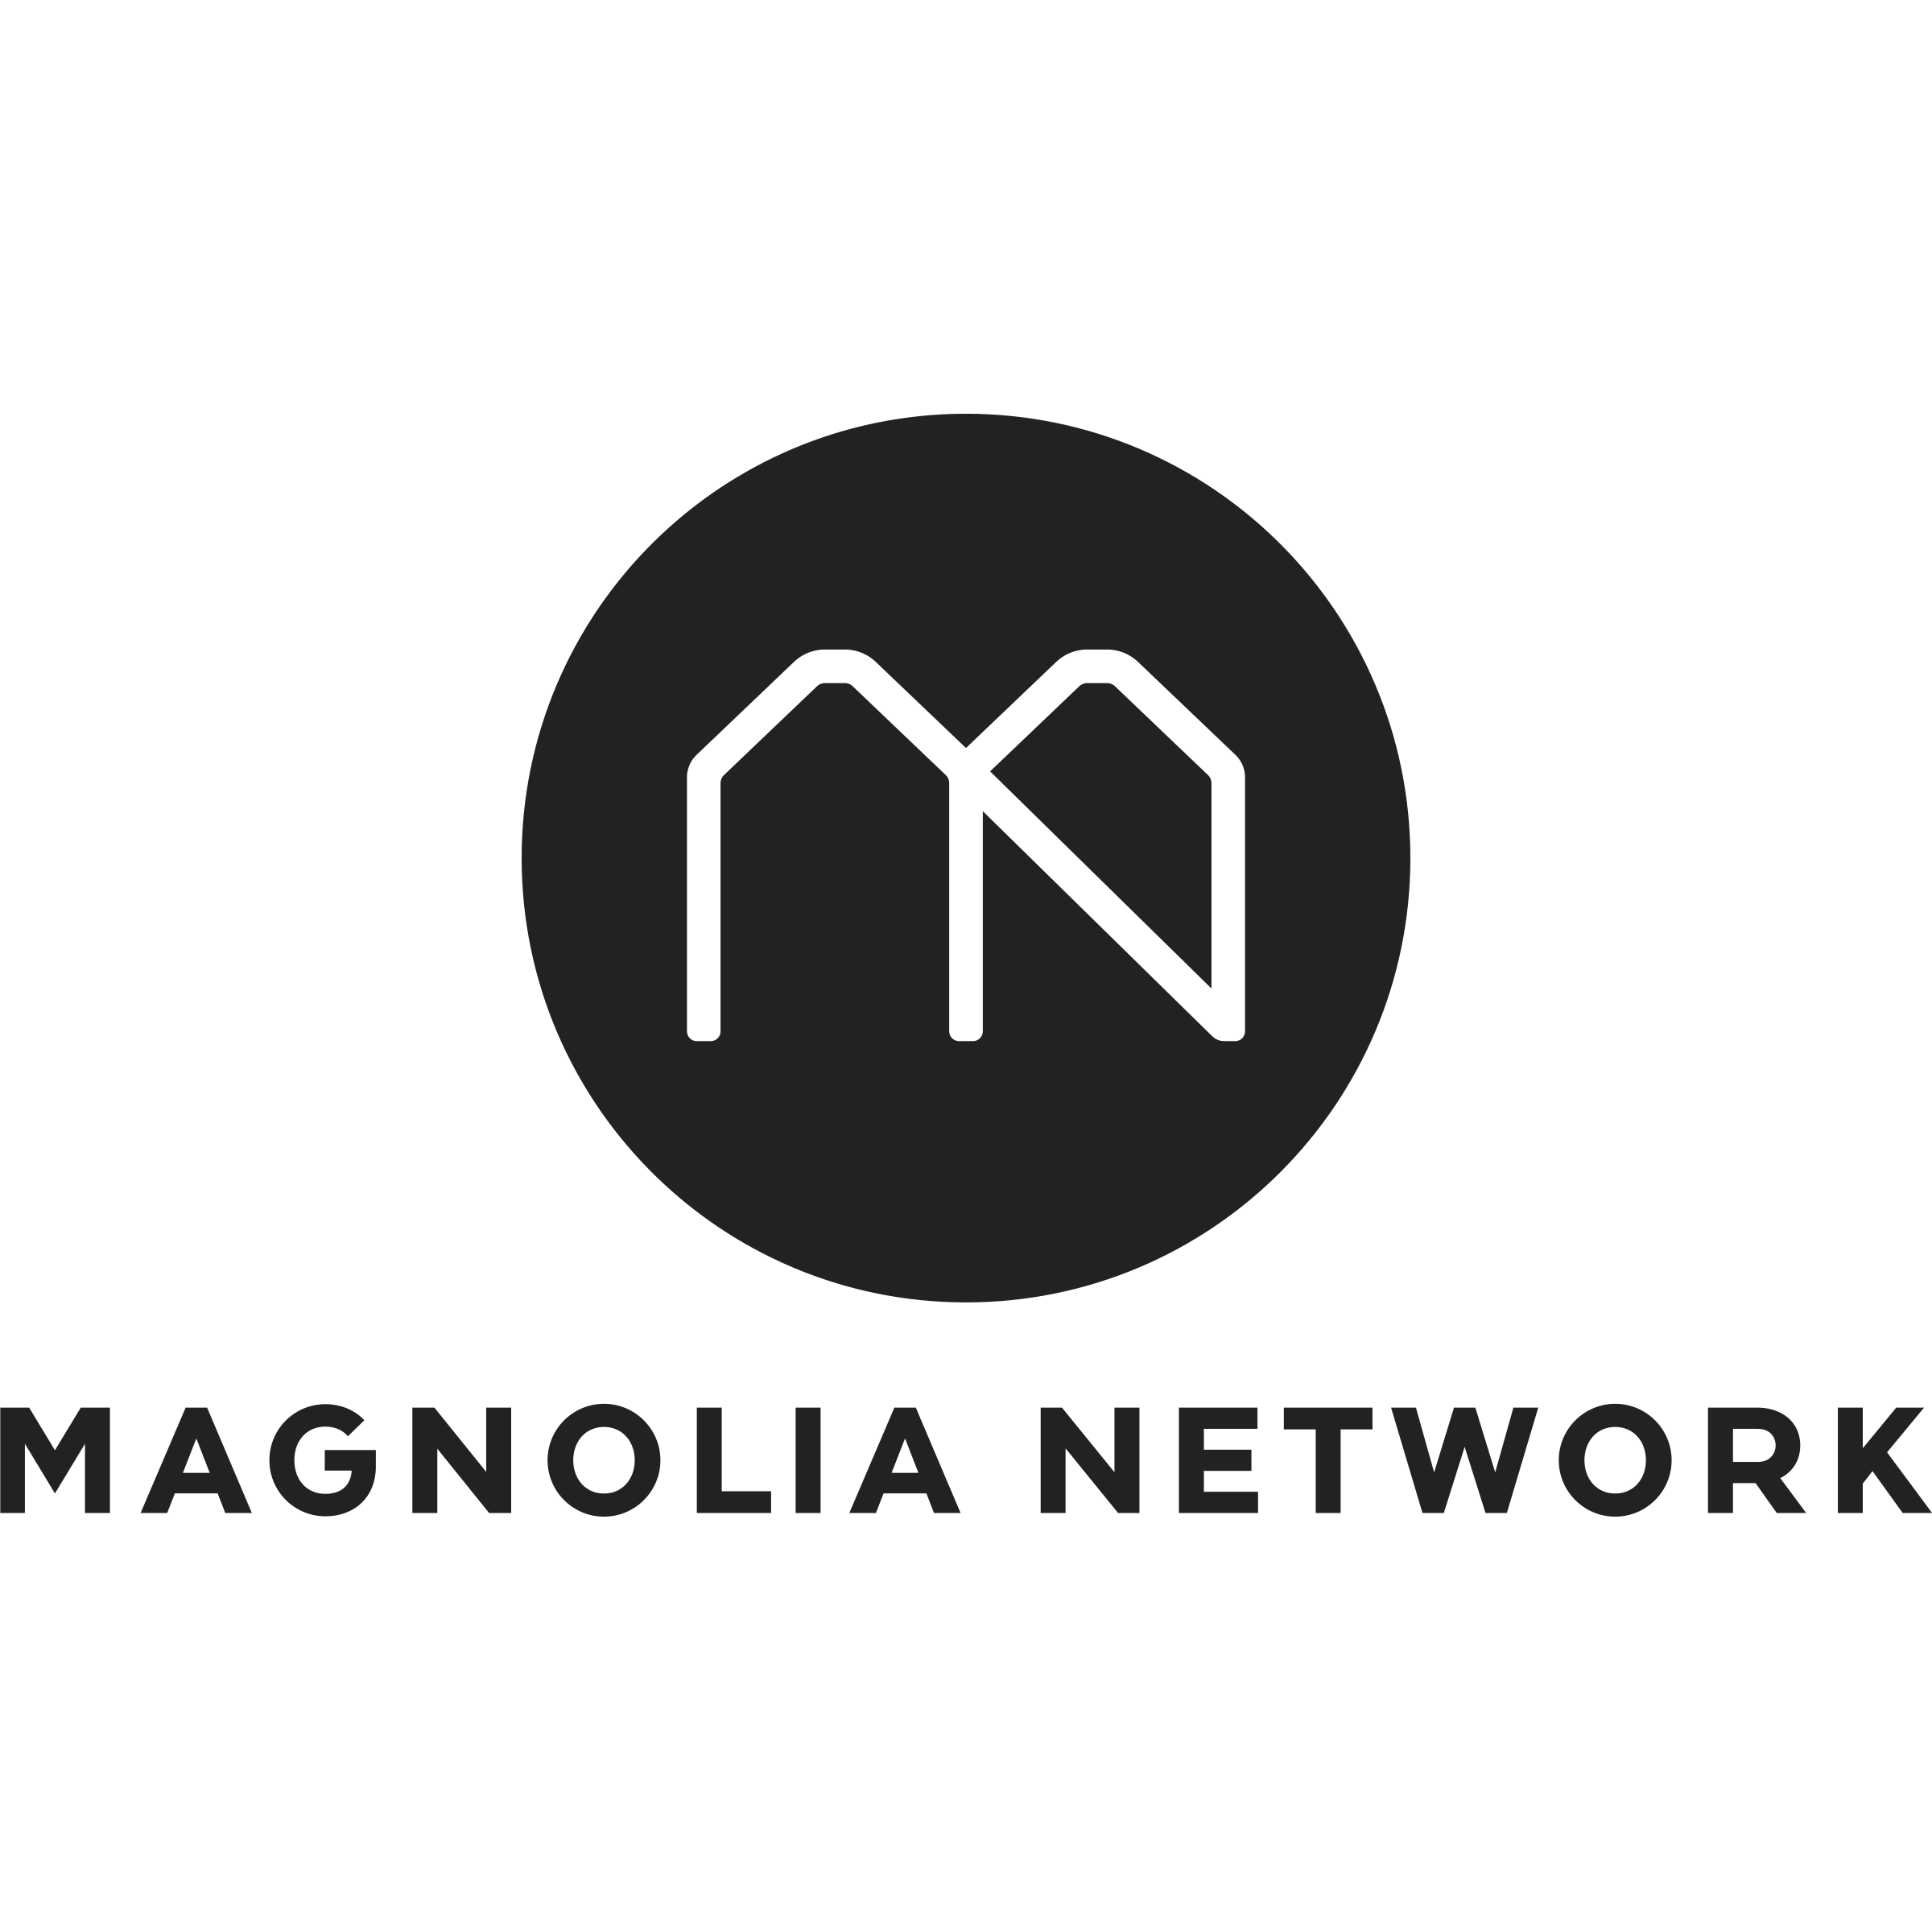 Magnolia Network 